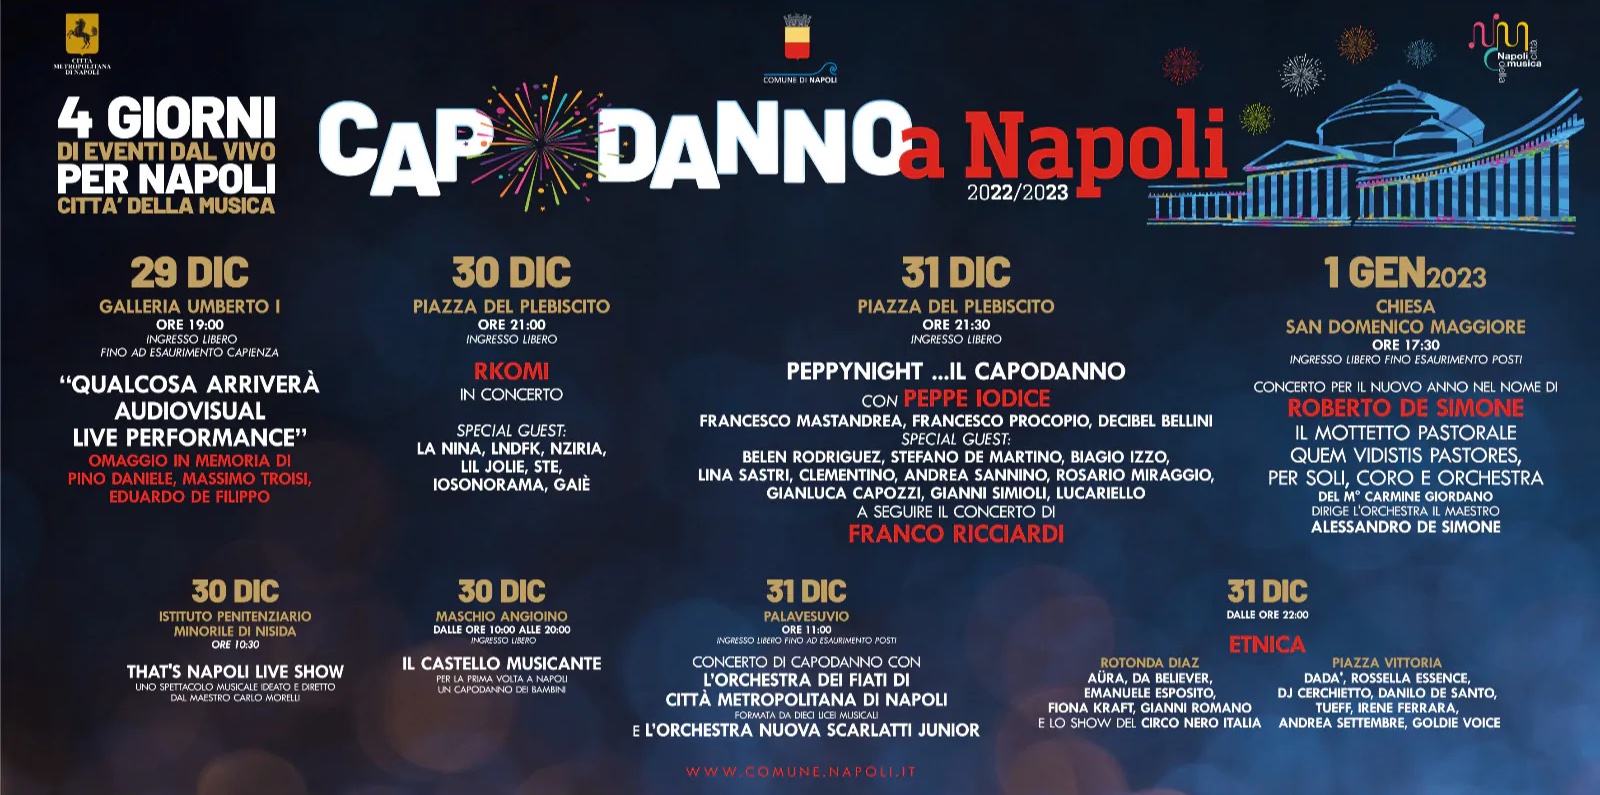 Napoli – I quattro giorni del Capodanno 2022/2023